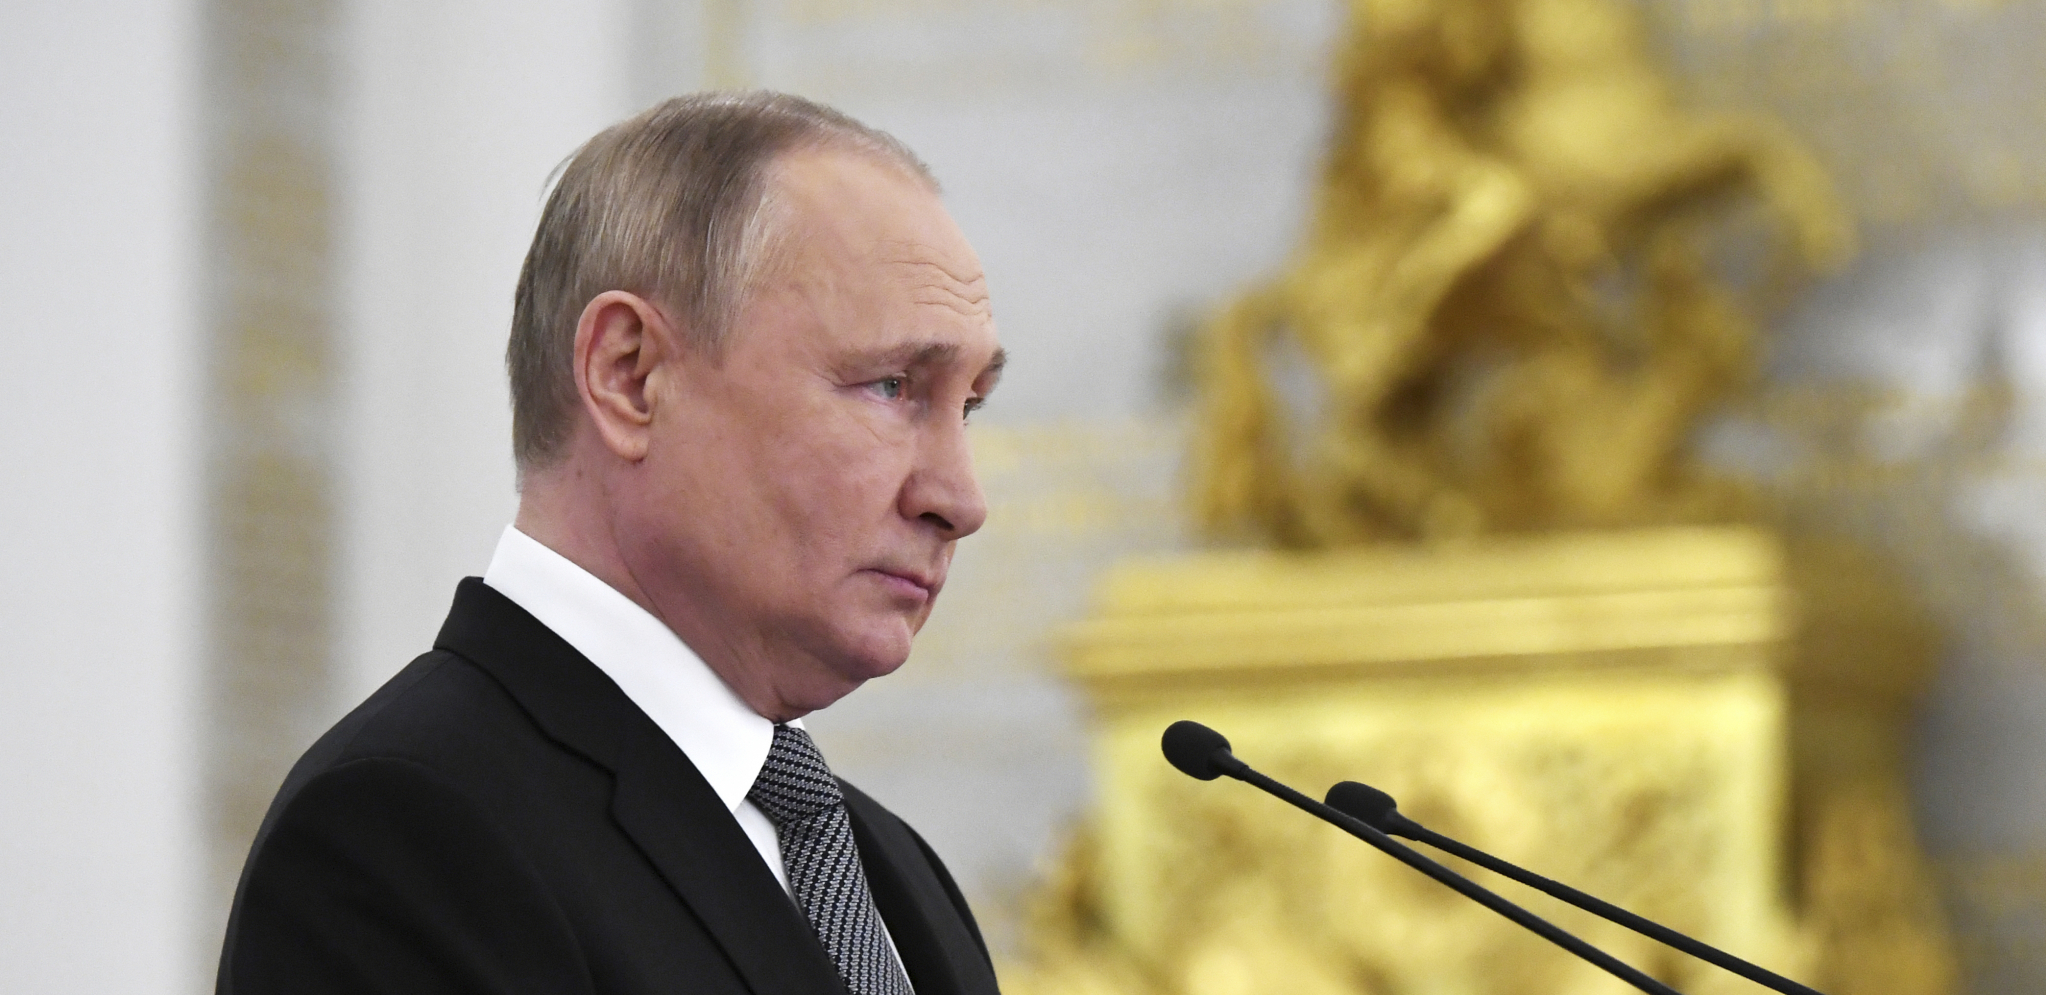 "JOŠ NIŠTA OZBILJNO NISMO ZAPOČELI" Putin: Zapad želi da se bori sa nama do poslednjeg Ukrajinca